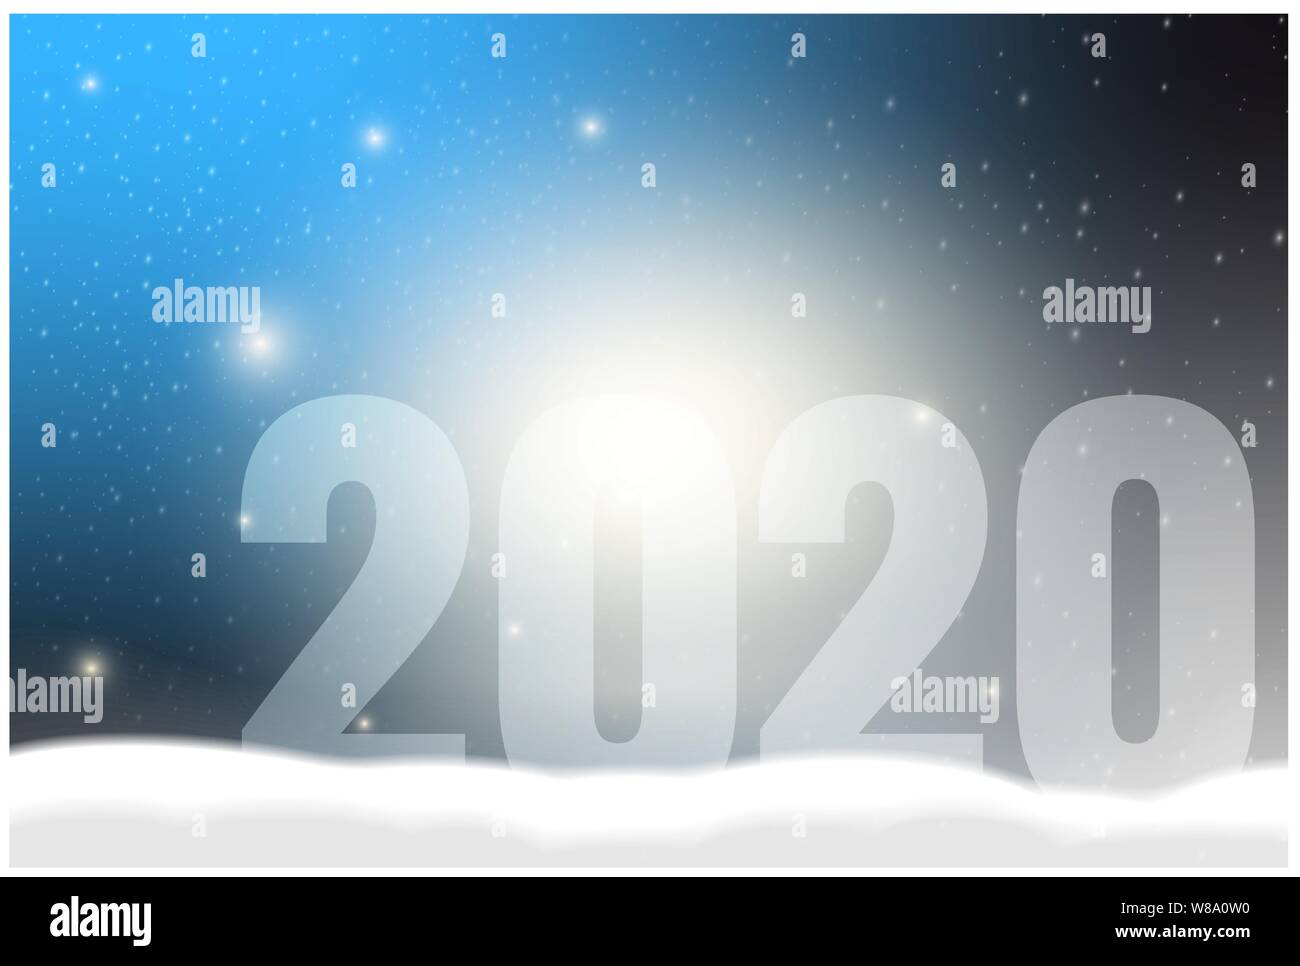 Neues Jahr Grußkarte 2020 gegen verschneite leuchtenden Hintergrund Vector Illustration Stock Vektor